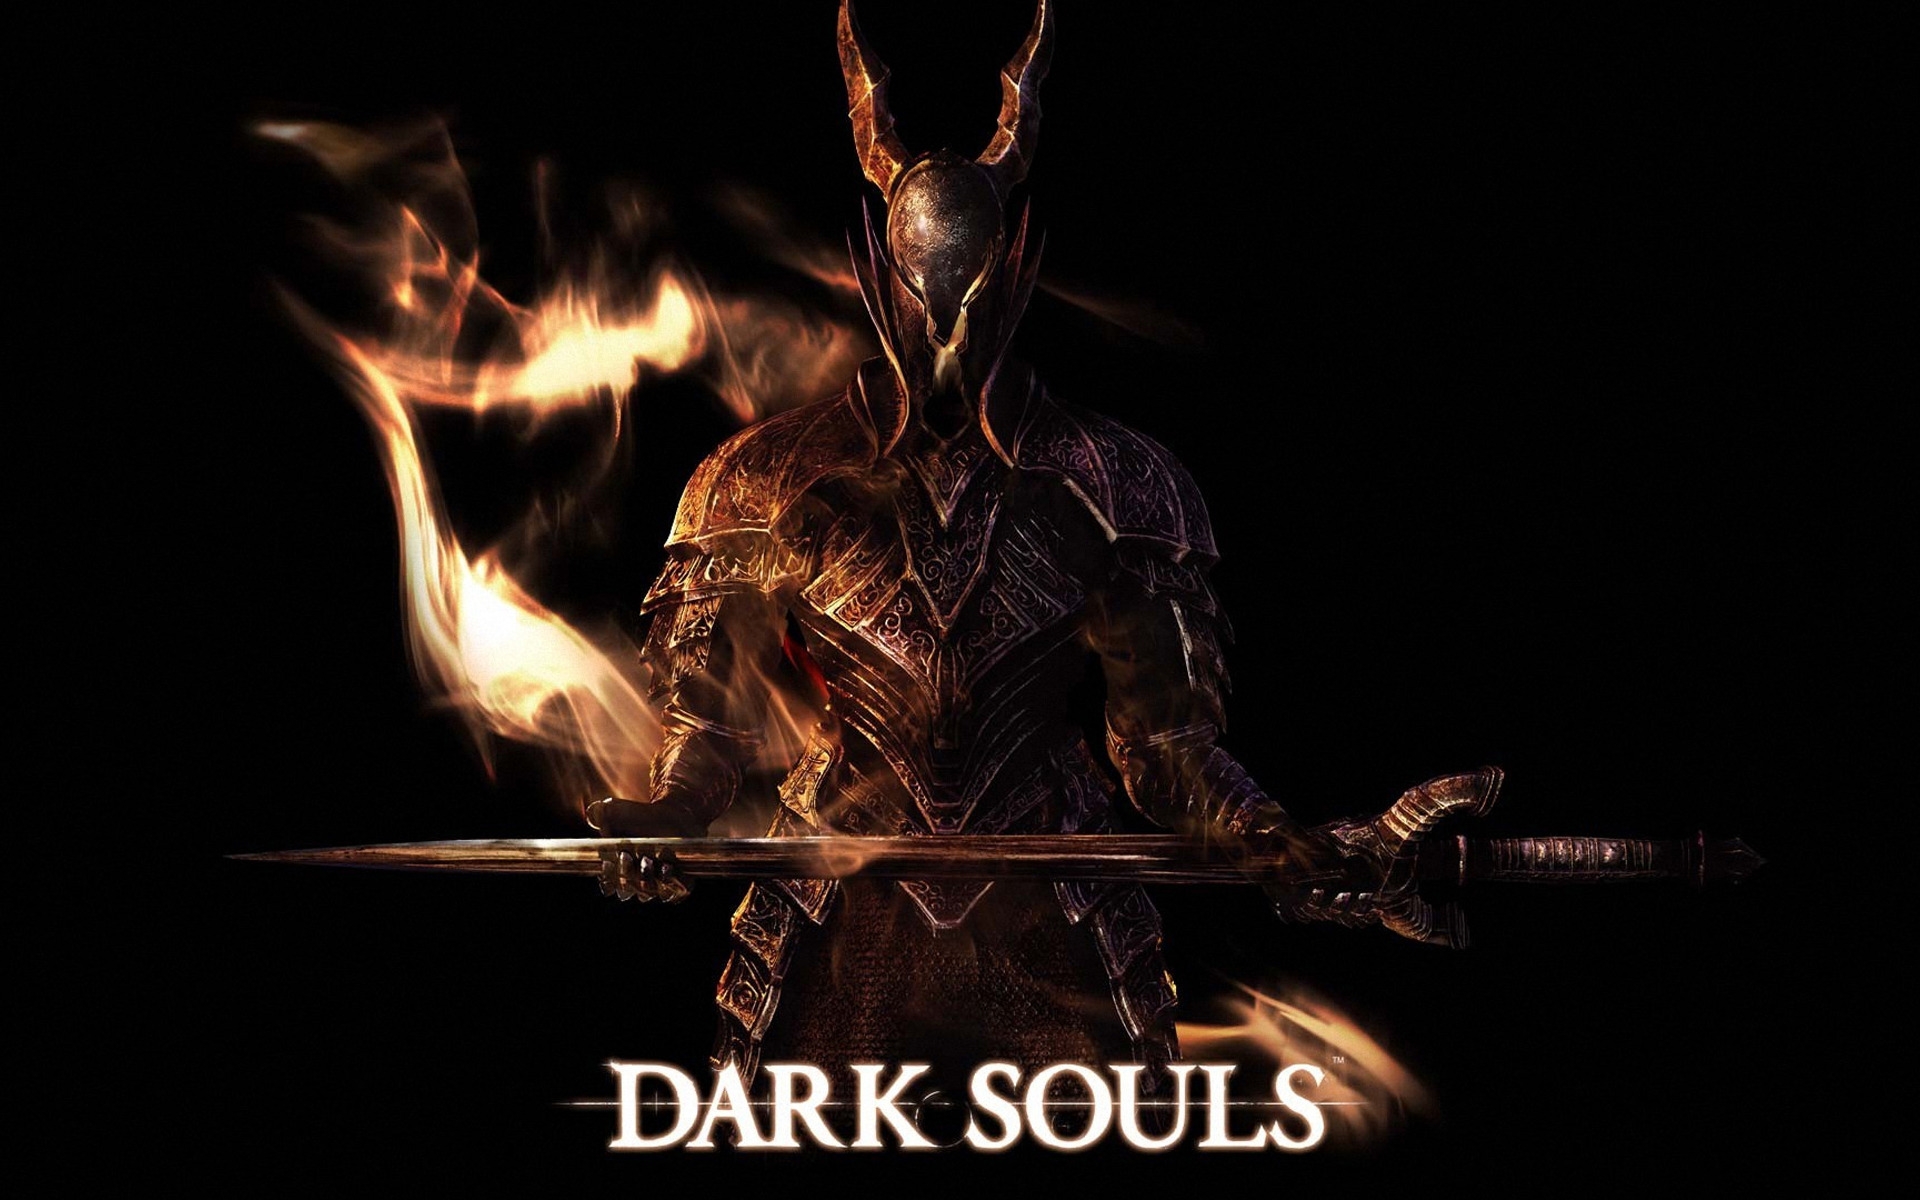 Dark Souls Art for 1920 x 1200 widescreen resolution